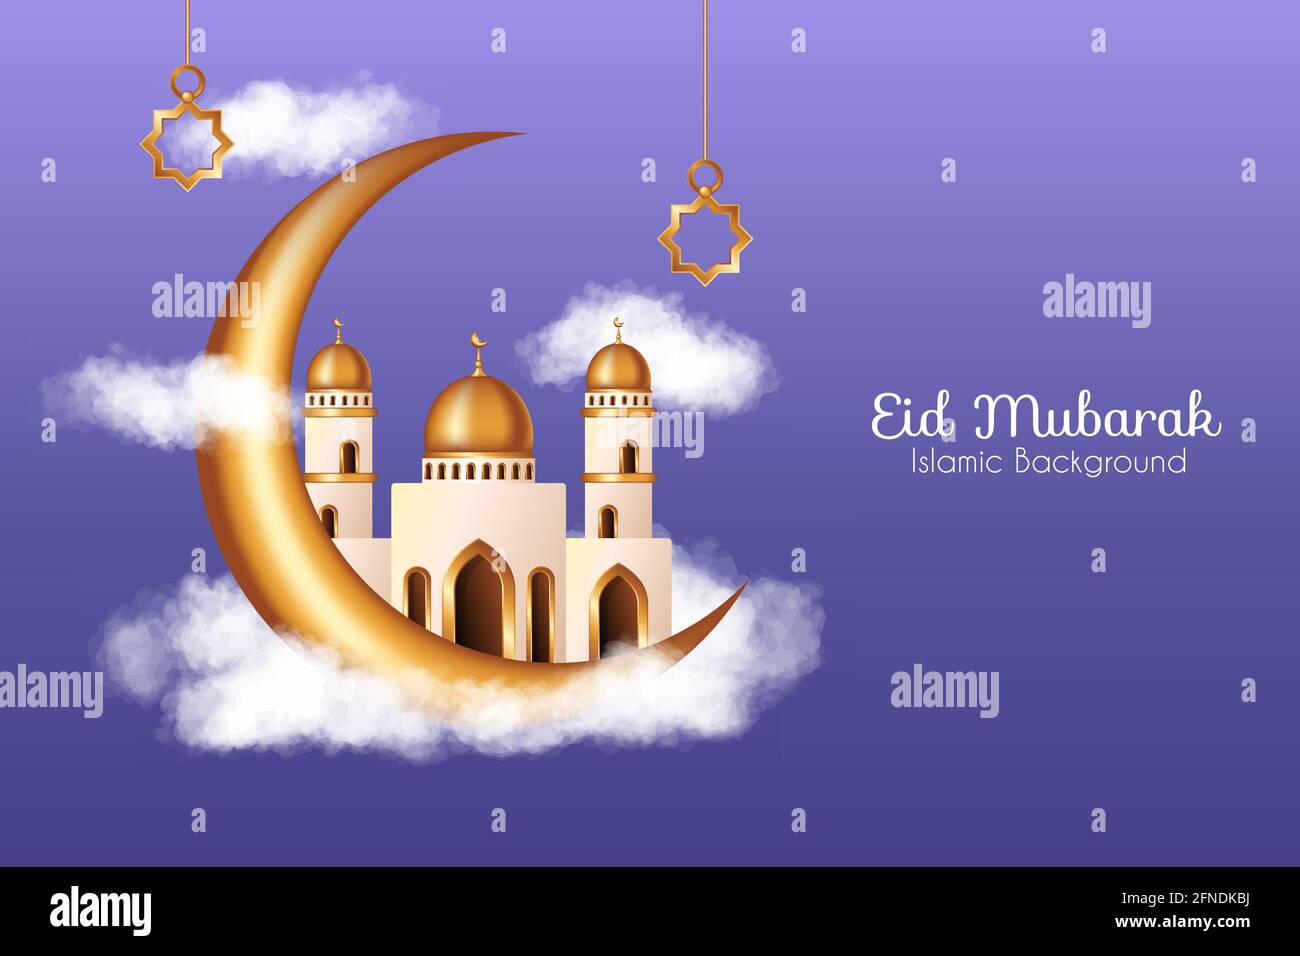 Islamischer Hintergrund mit realistischen Wolken, goldenen 3D-Moschee und Halbmond Dekorationen. Islamischer Hintergrund geeignet für Ramadan, Eid al Adha Stock Vektor